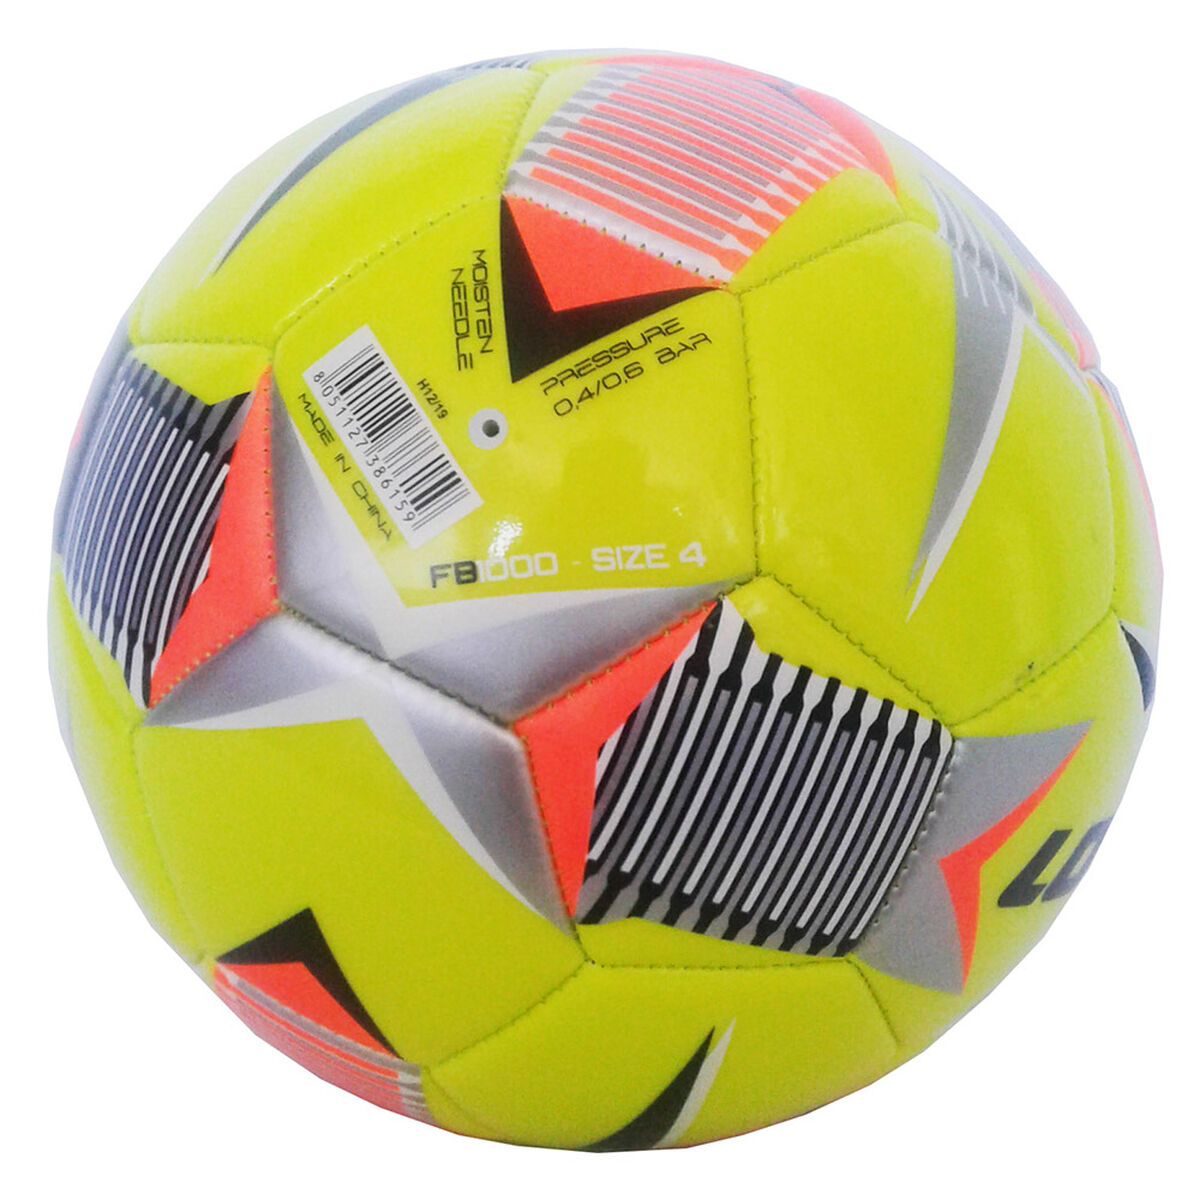 Balón de Fútbol Lotto 1000 Iv 4